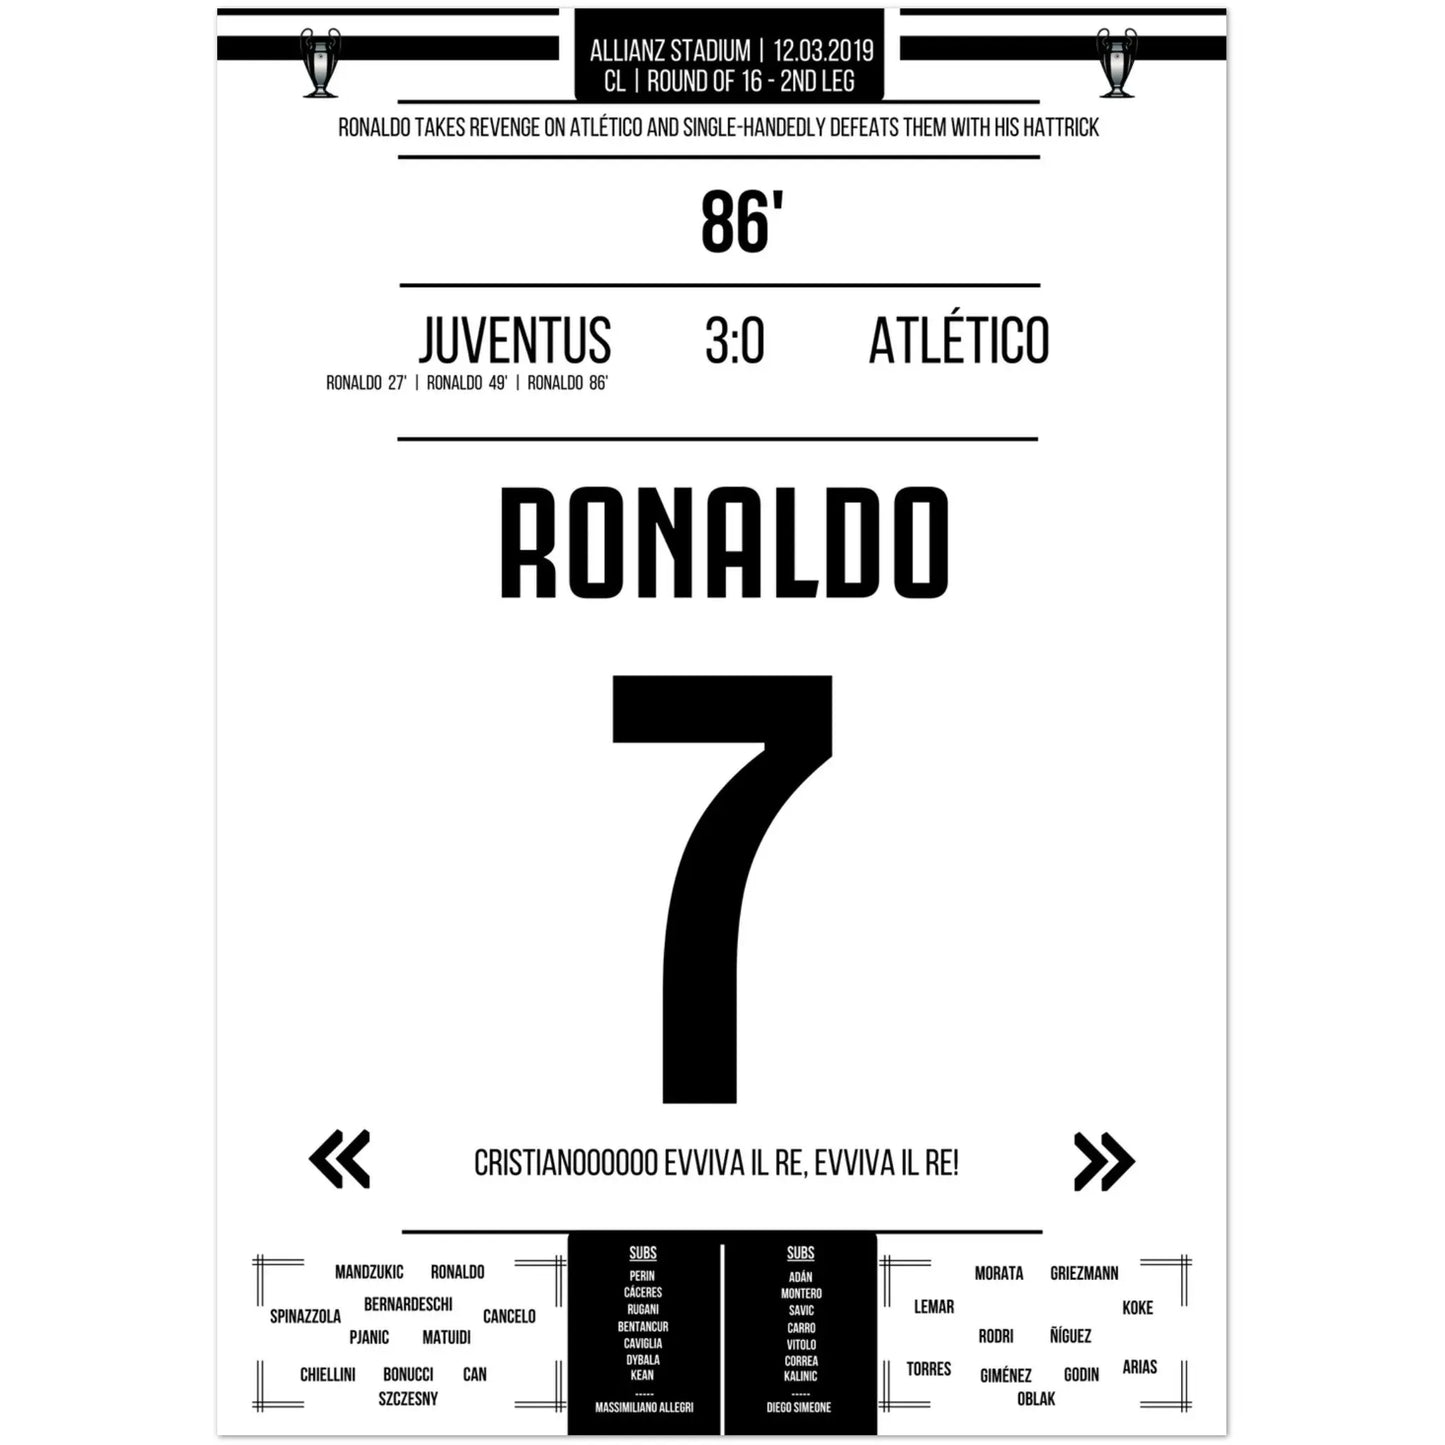 Ronaldo's wraak tegen Atlético in de terugwedstrijd van de Champions League van 2019